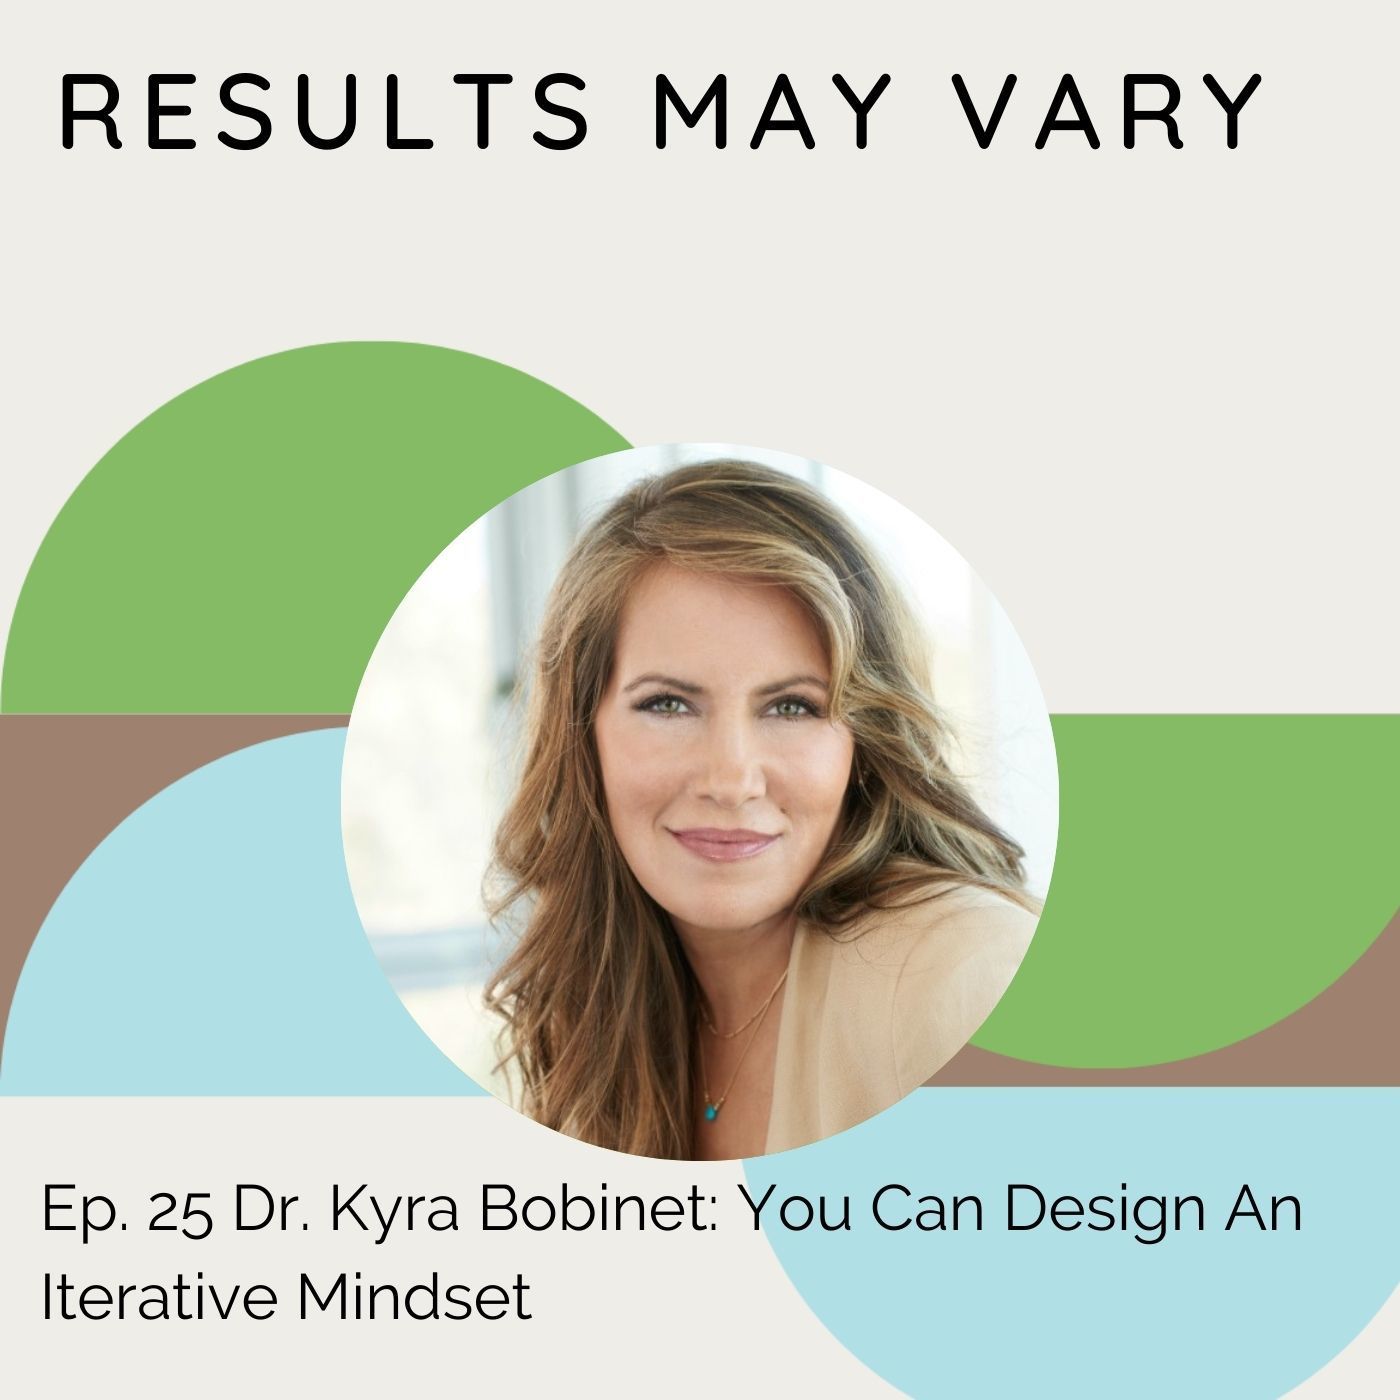 RMV 25 Dr. Kyra Bobinet: You Can Design An Iterative Mindset